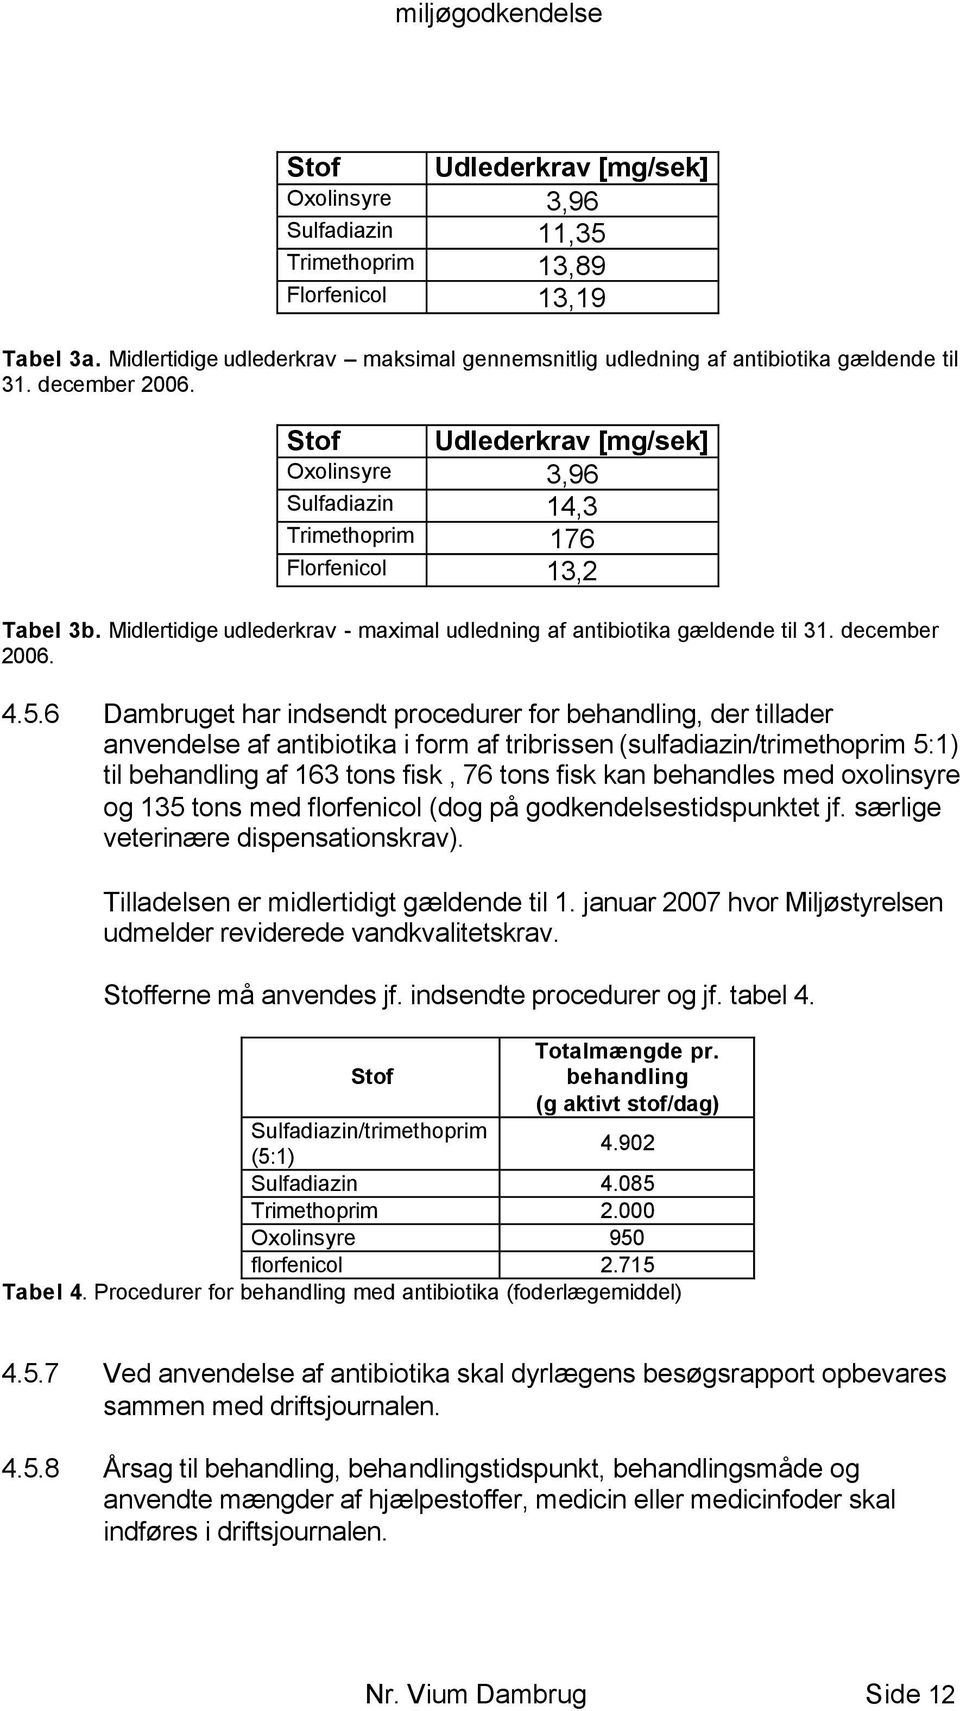 Stof Udlederkrav [mg/sek] Oxolinsyre 3,96 Sulfadiazin 14,3 Trimethoprim 176 Florfenicol 13,2 Tabel 3b. Midlertidige udlederkrav - maximal udledning af antibiotika gældende til 31. december 2006. 4.5.